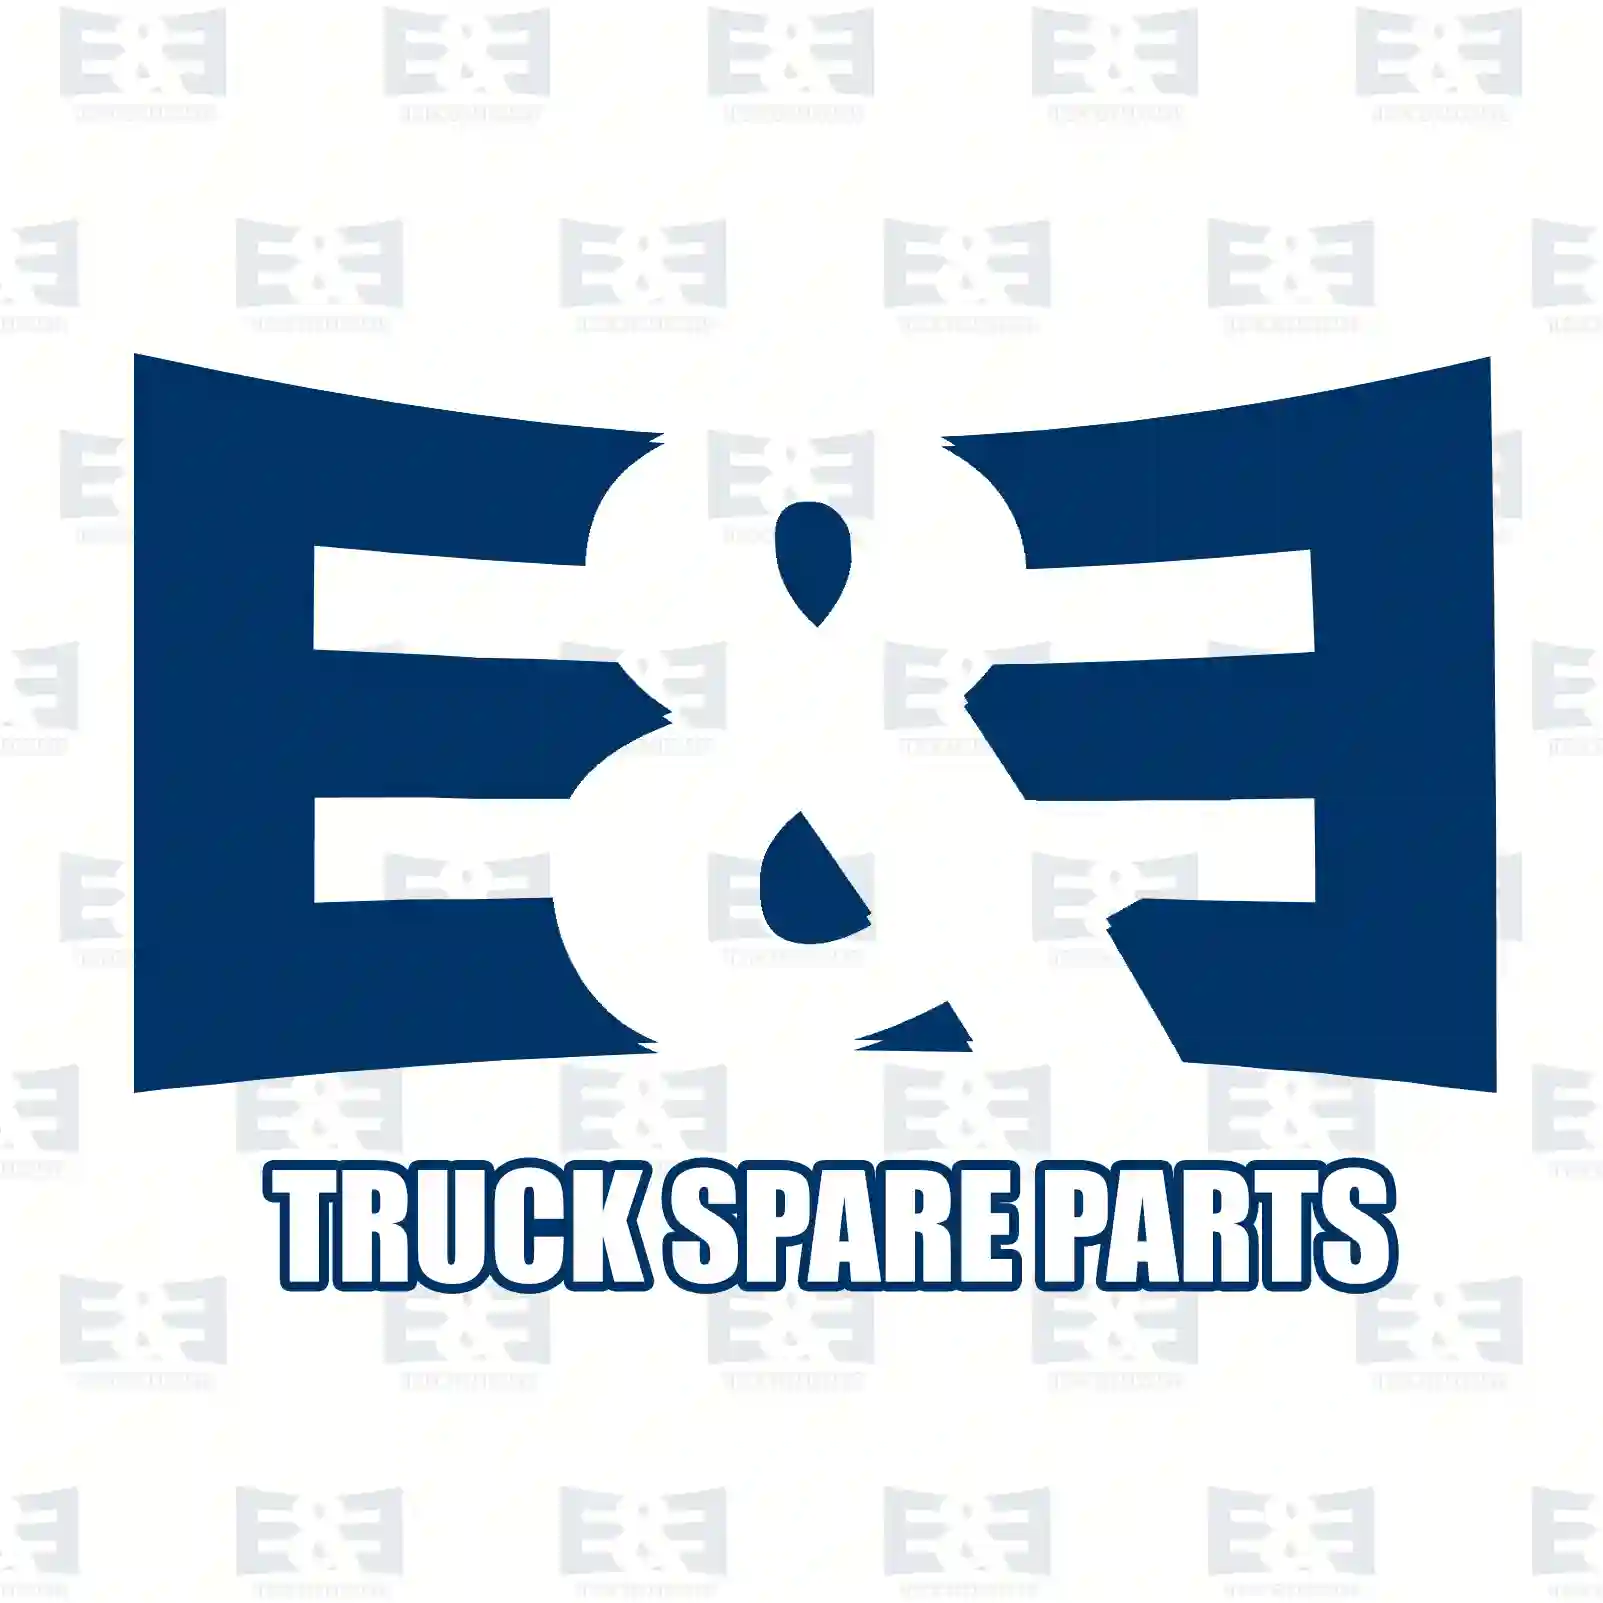 Ball joint, level valve, 2E2275354, 946704 ||  2E2275354 E&E Truck Spare Parts | Truck Spare Parts, Auotomotive Spare Parts Ball joint, level valve, 2E2275354, 946704 ||  2E2275354 E&E Truck Spare Parts | Truck Spare Parts, Auotomotive Spare Parts